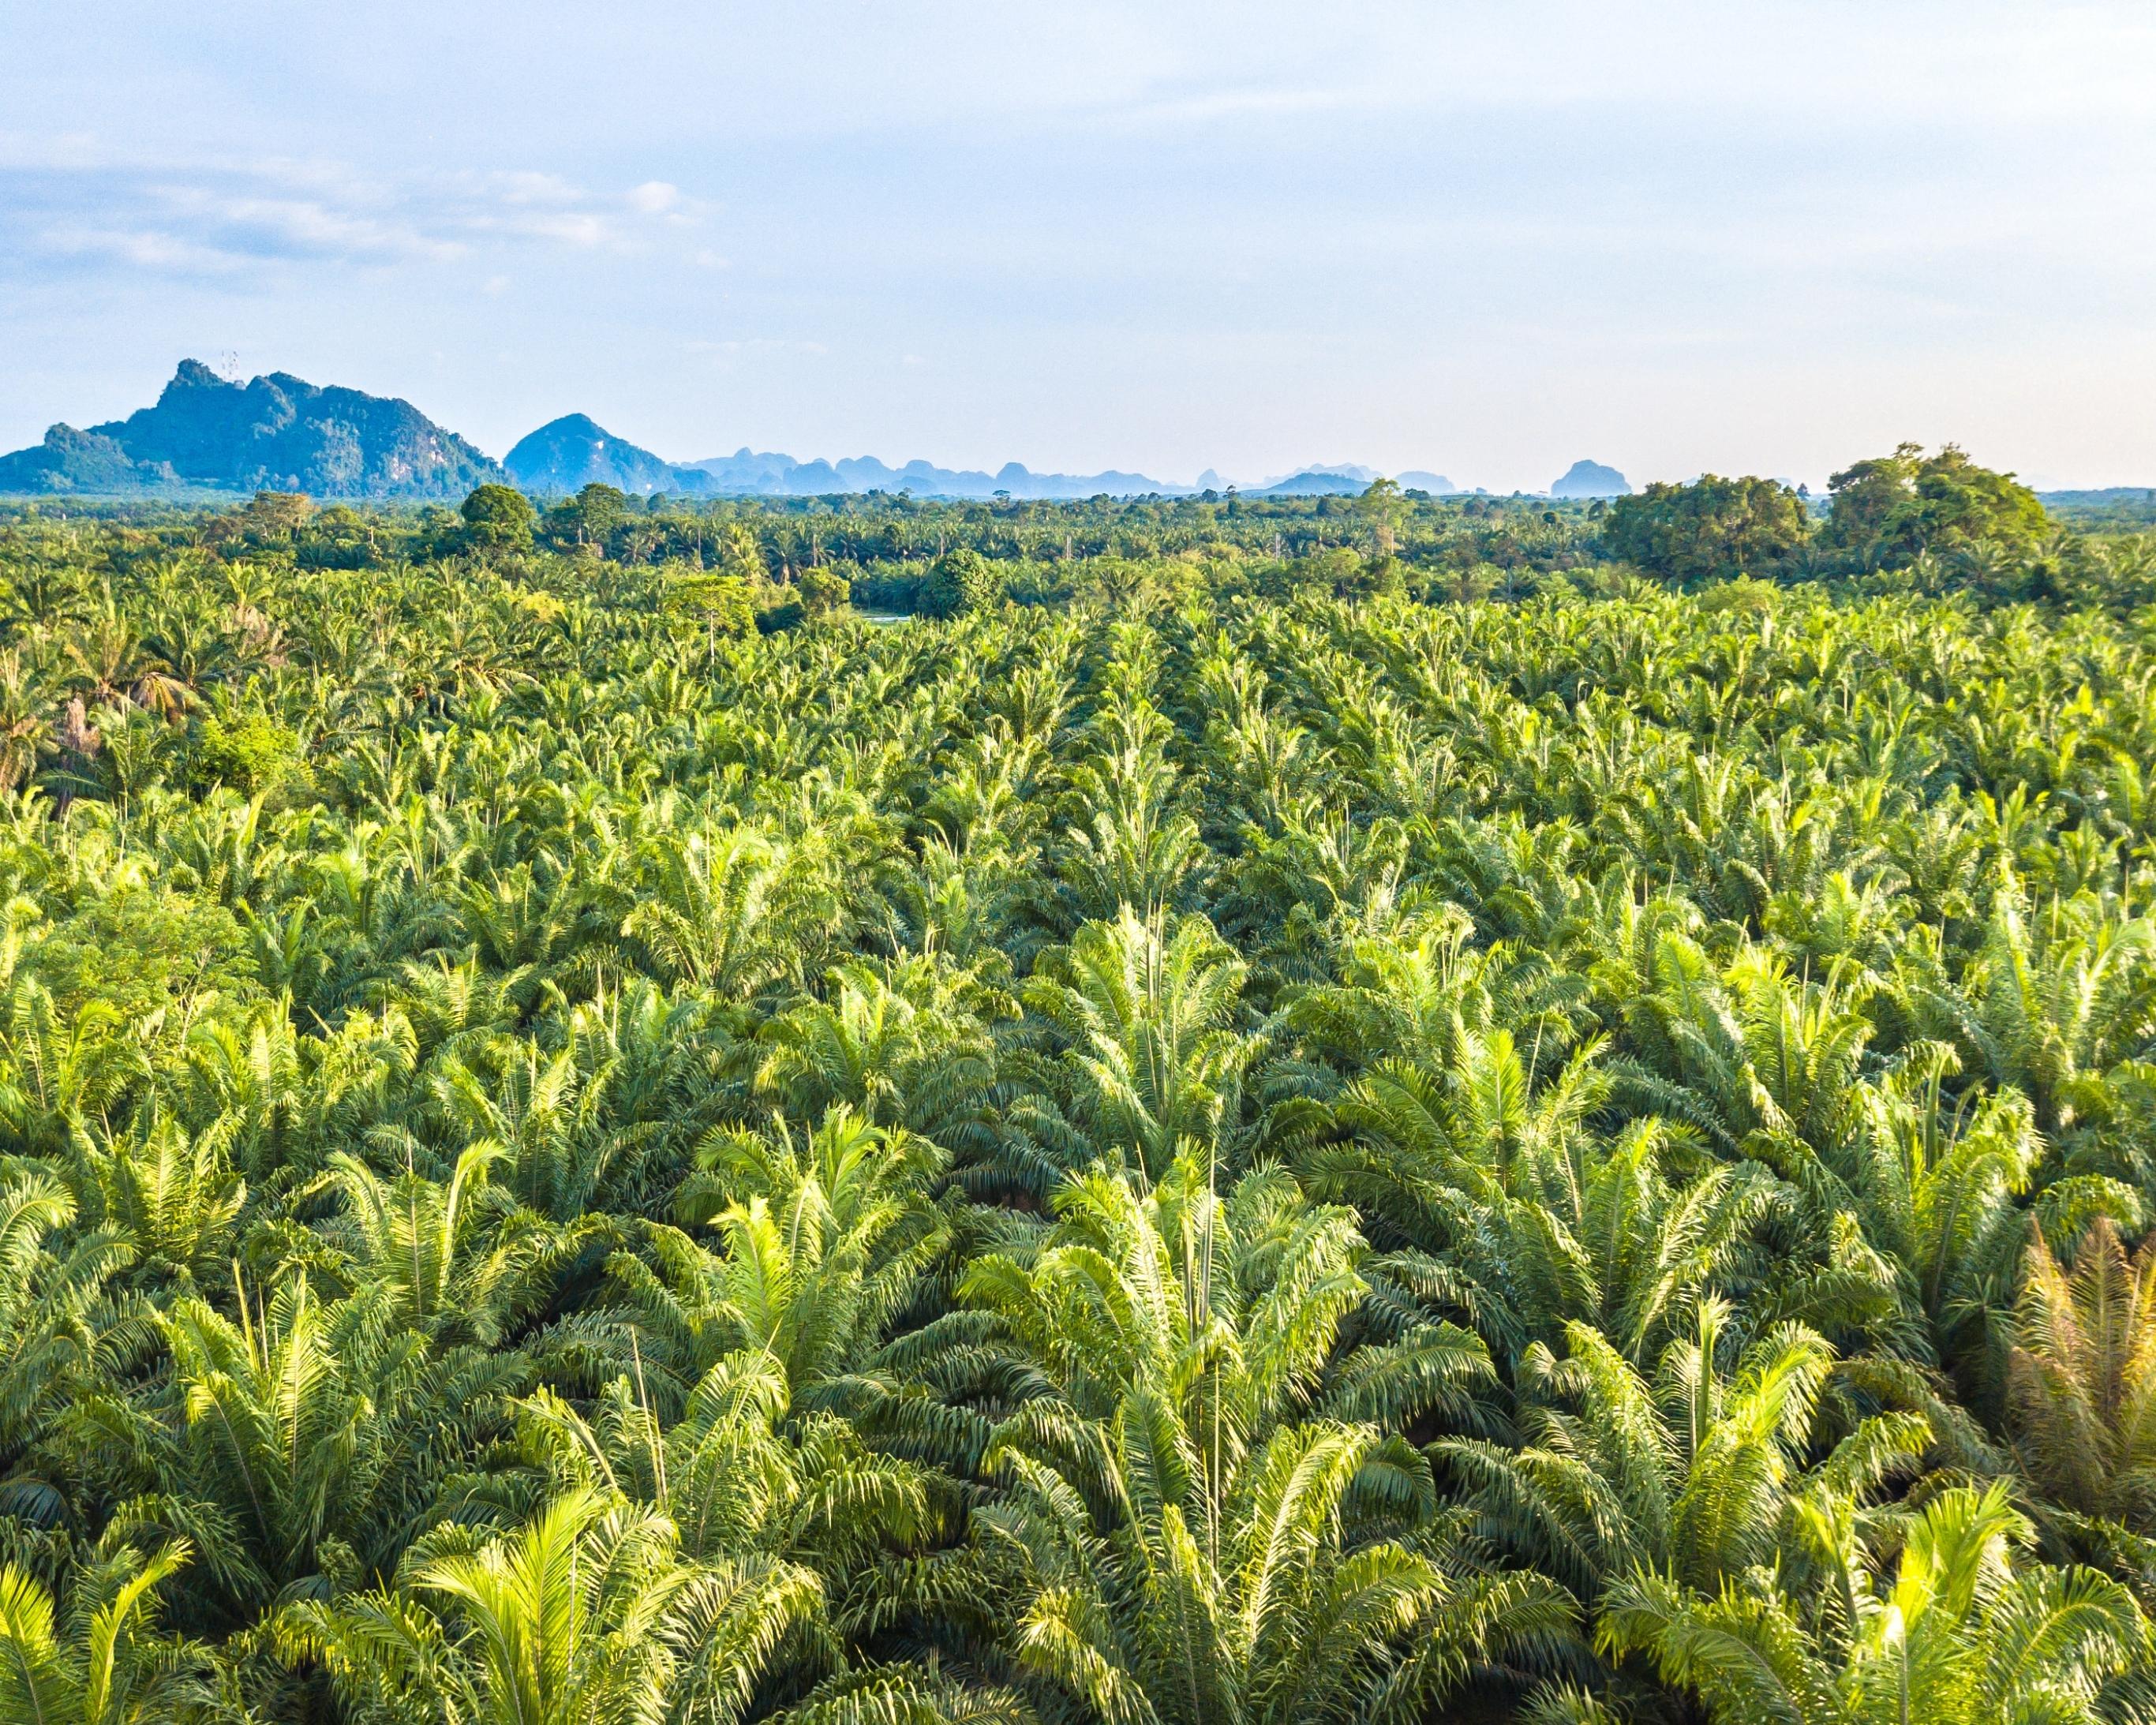 Prečo sa vyhýbame palmovému oleju? Z lásky k životnému prostrediu!